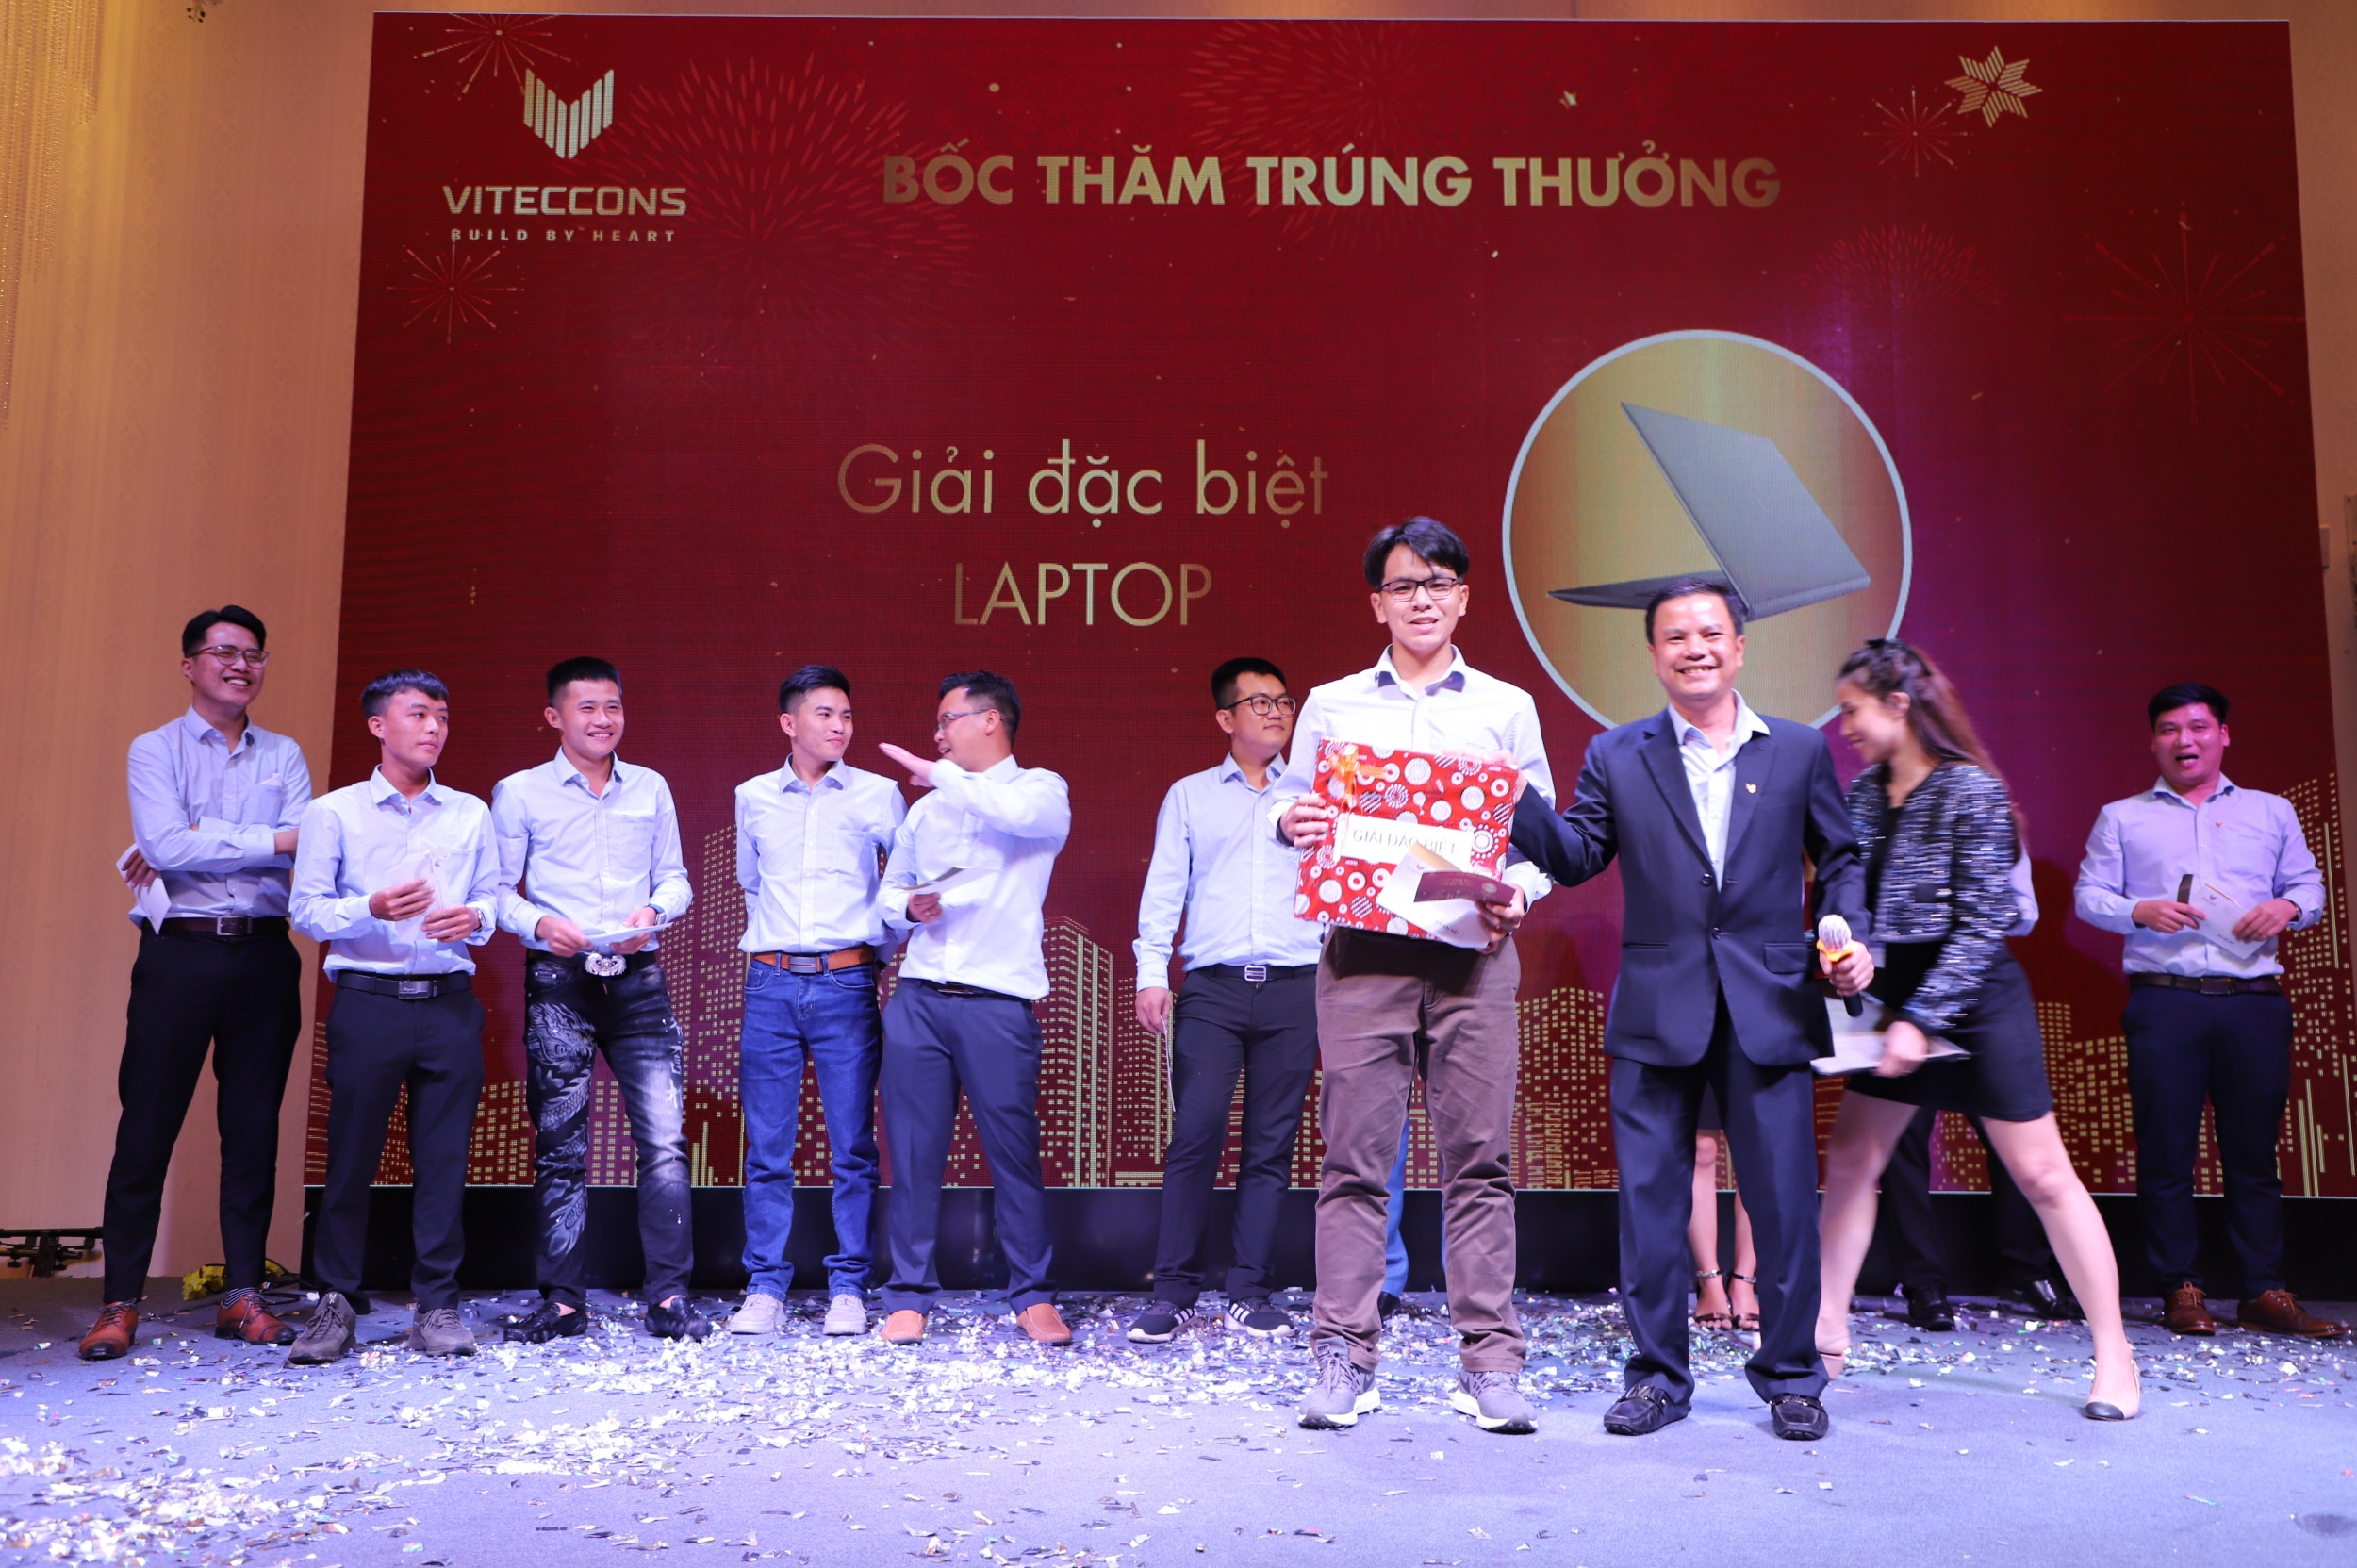 Ông Phạm Ngọc Thạch - Trao giải Đặc biệt cho Nhân viên may mắn trong Chương trình bốc thăm trúng thưởng